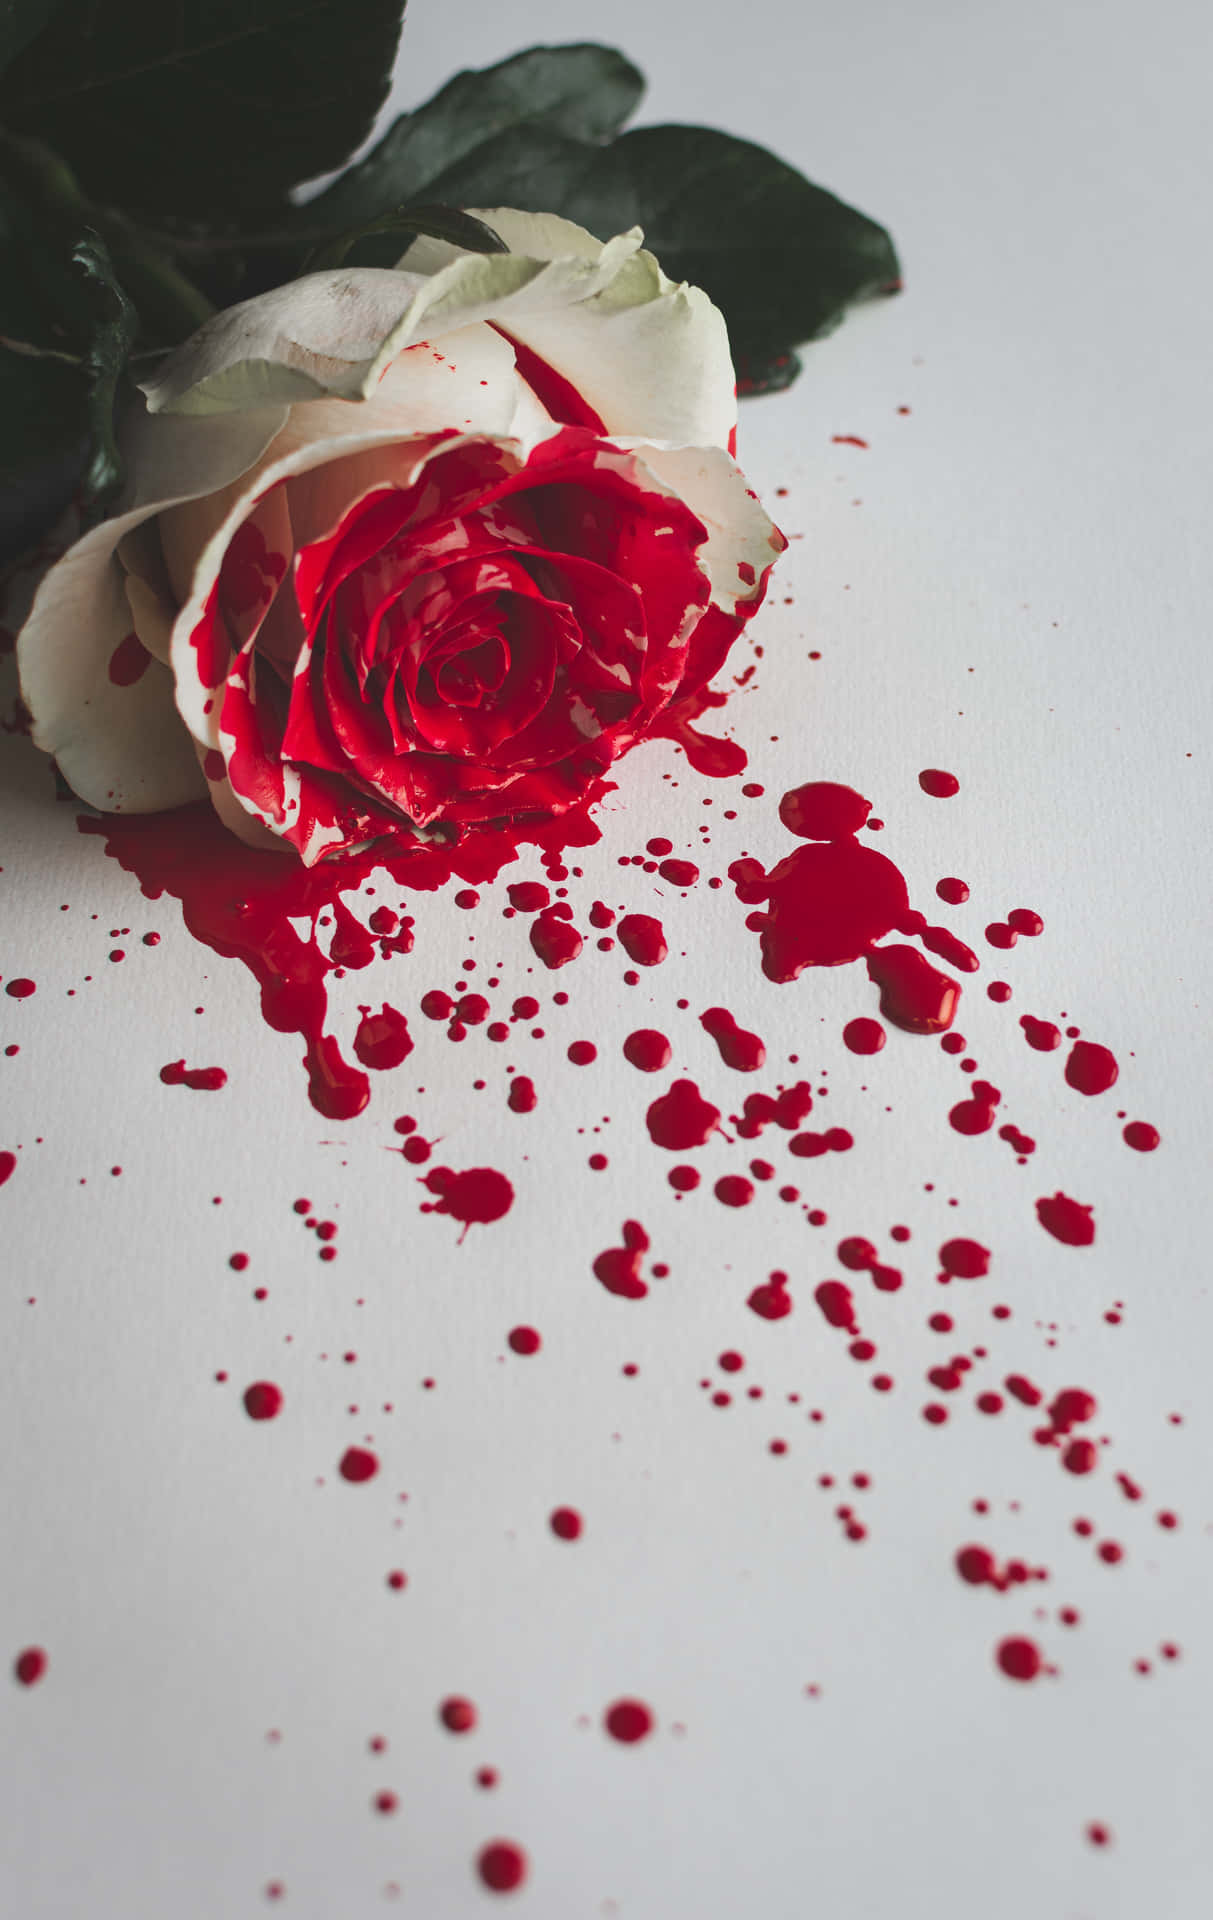 Roteund Weiße Rosen Mit Blutspritzern. Wallpaper